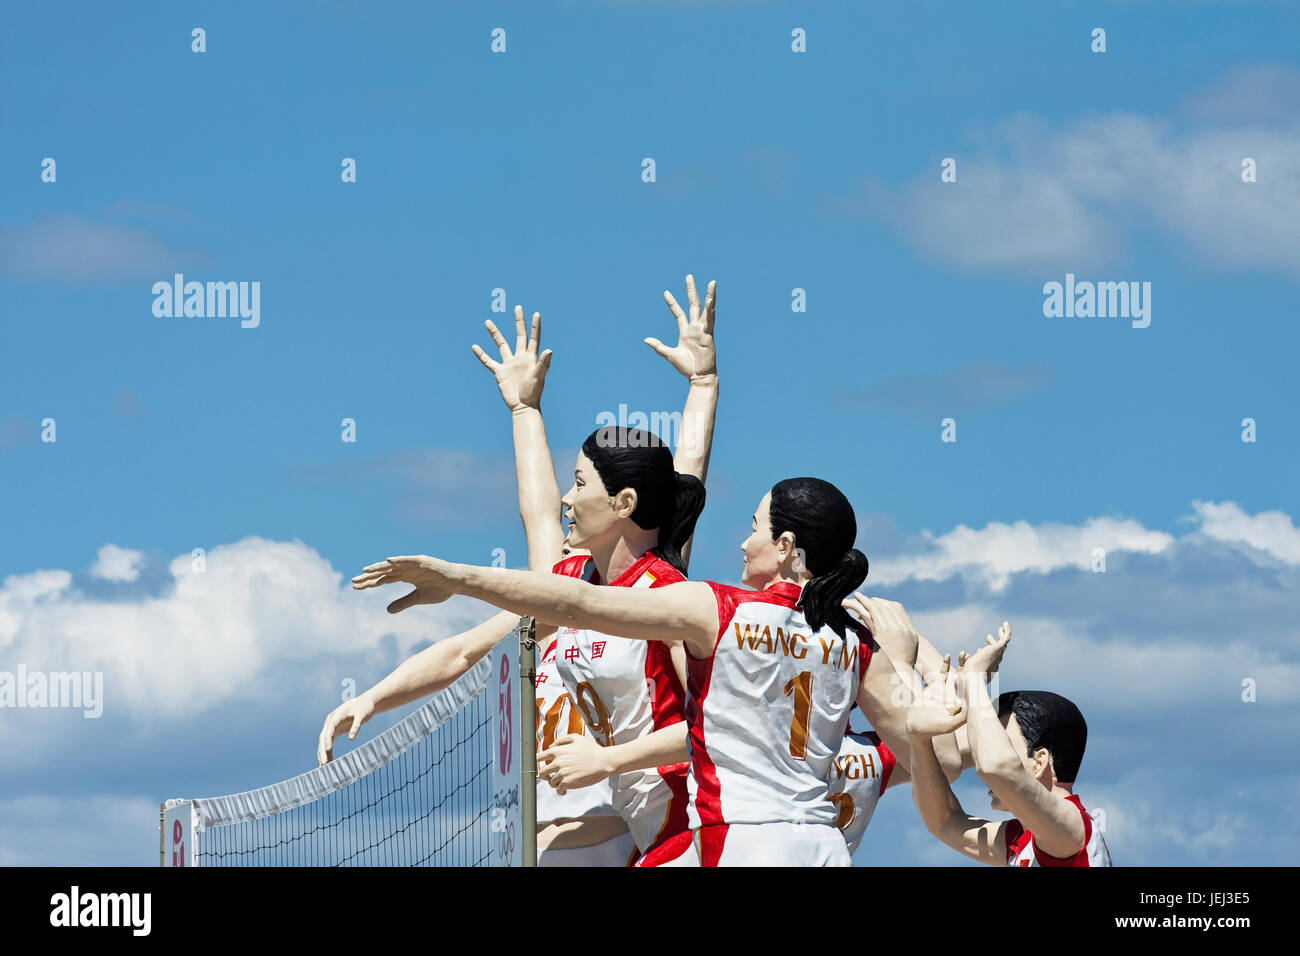 BEIJING – 31 DE AGOSTO DE 2008. Esculturas de atletas olímpicos chinos exhibidas en el Parque Yuyuantan contra un cielo azul con nubes. Foto de stock